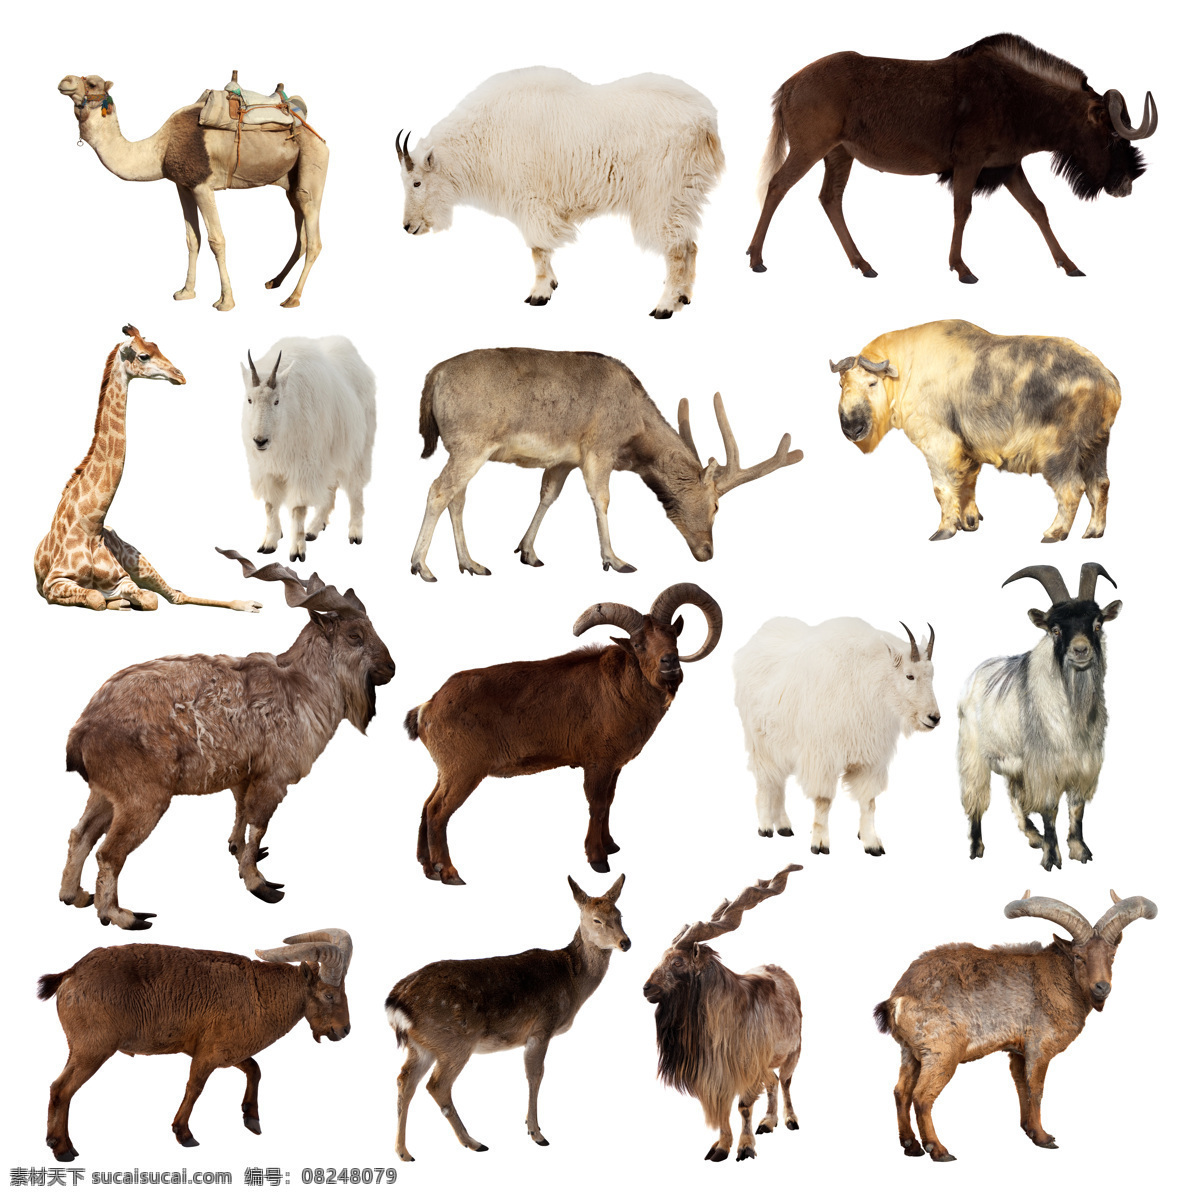 大 草原 动物 合 辑 大草原 羚羊 长颈鹿 骆驼 牦牛 陆地动物 生物世界